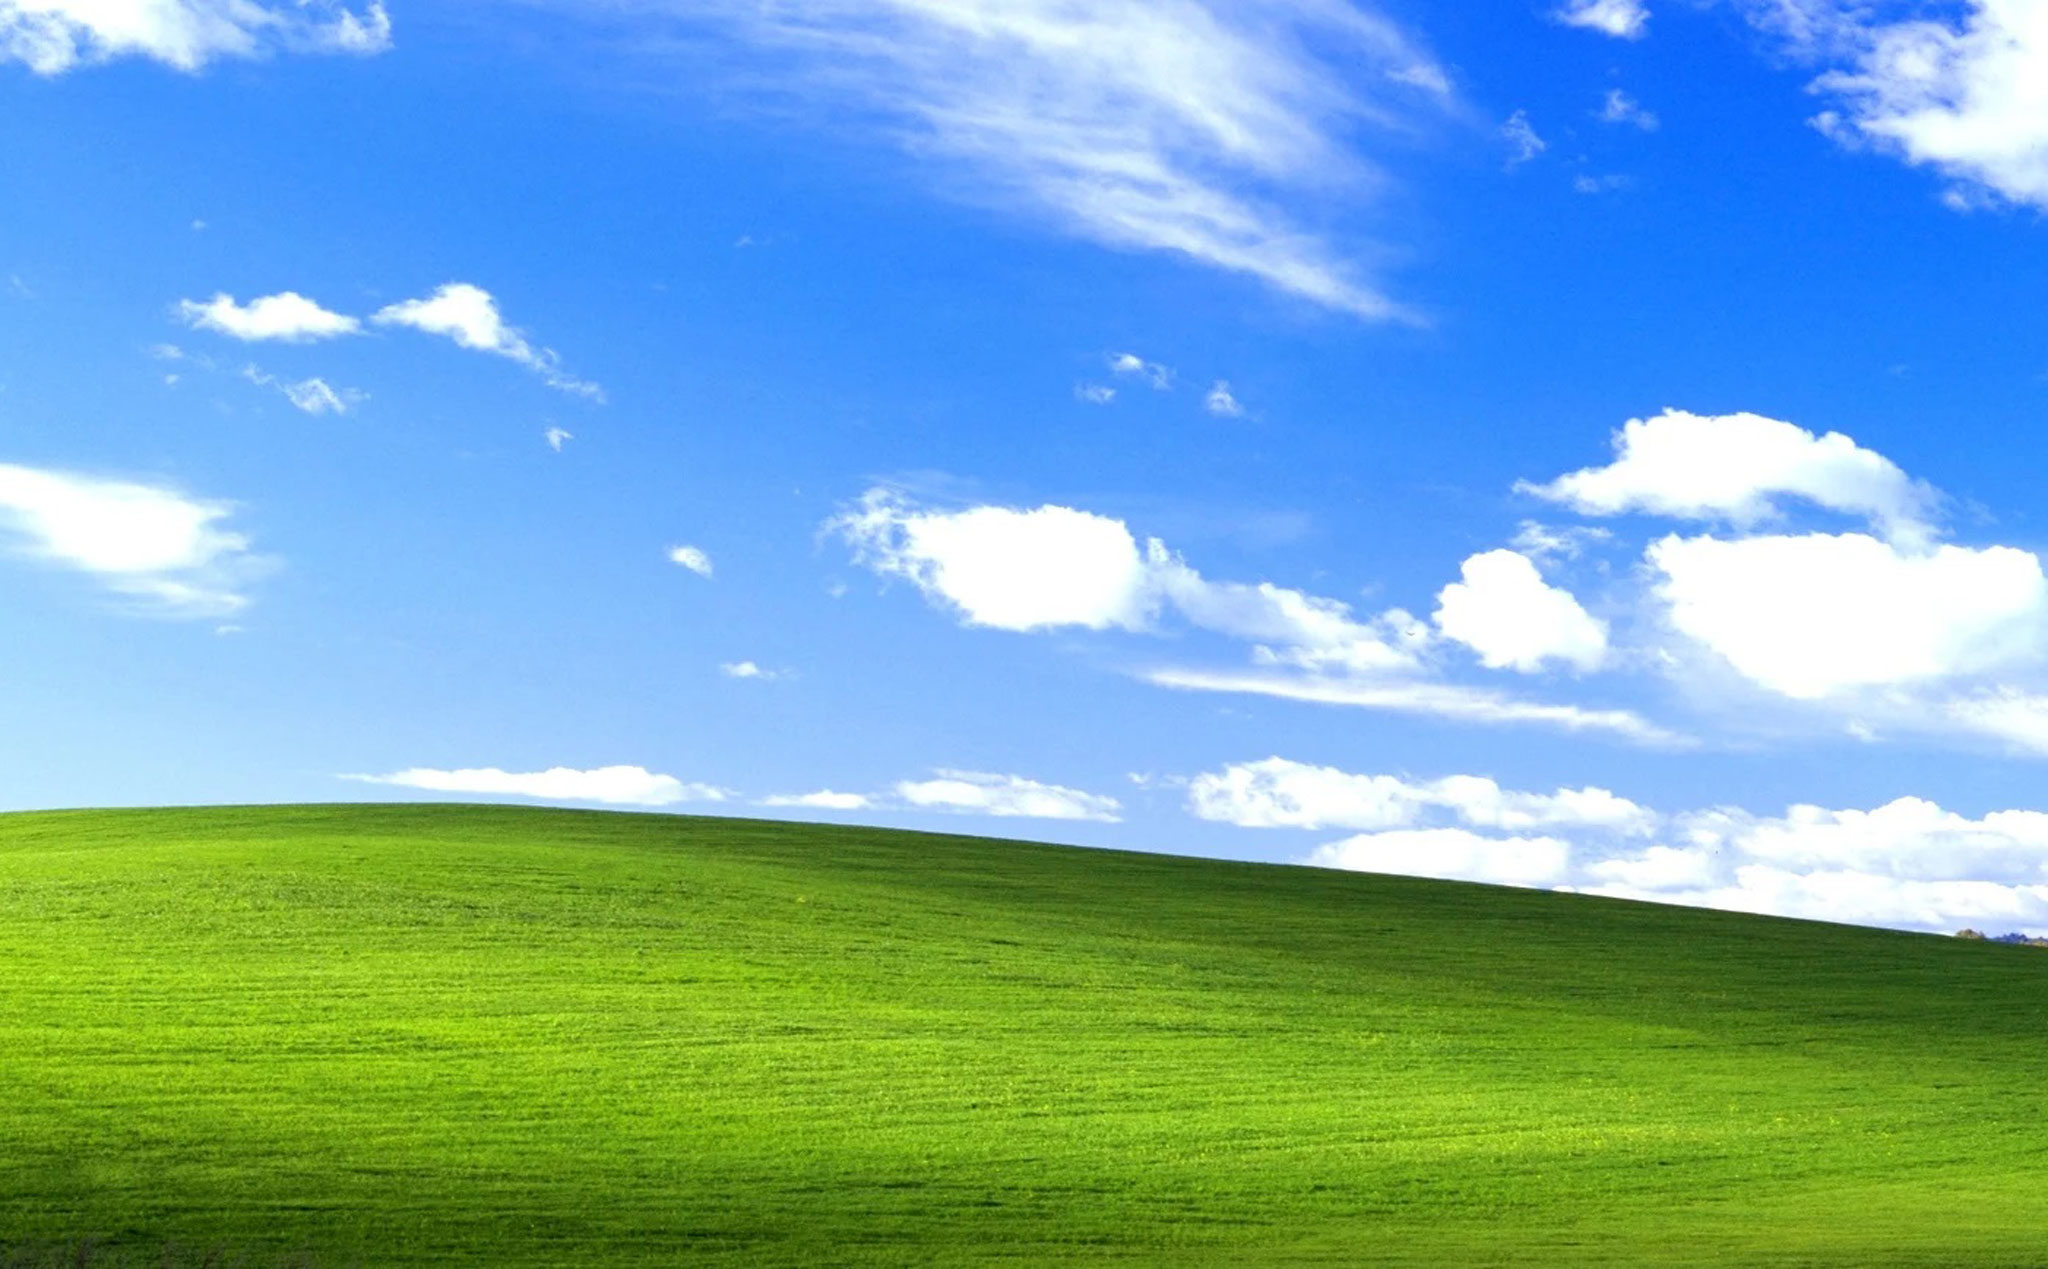 Hãy tìm hiểu hệ điều hành Windows XP với nhiều tính năng tiện ích và dễ sử dụng trên máy tính. Xem hình ảnh liên quan ngay để khám phá thêm nhé!